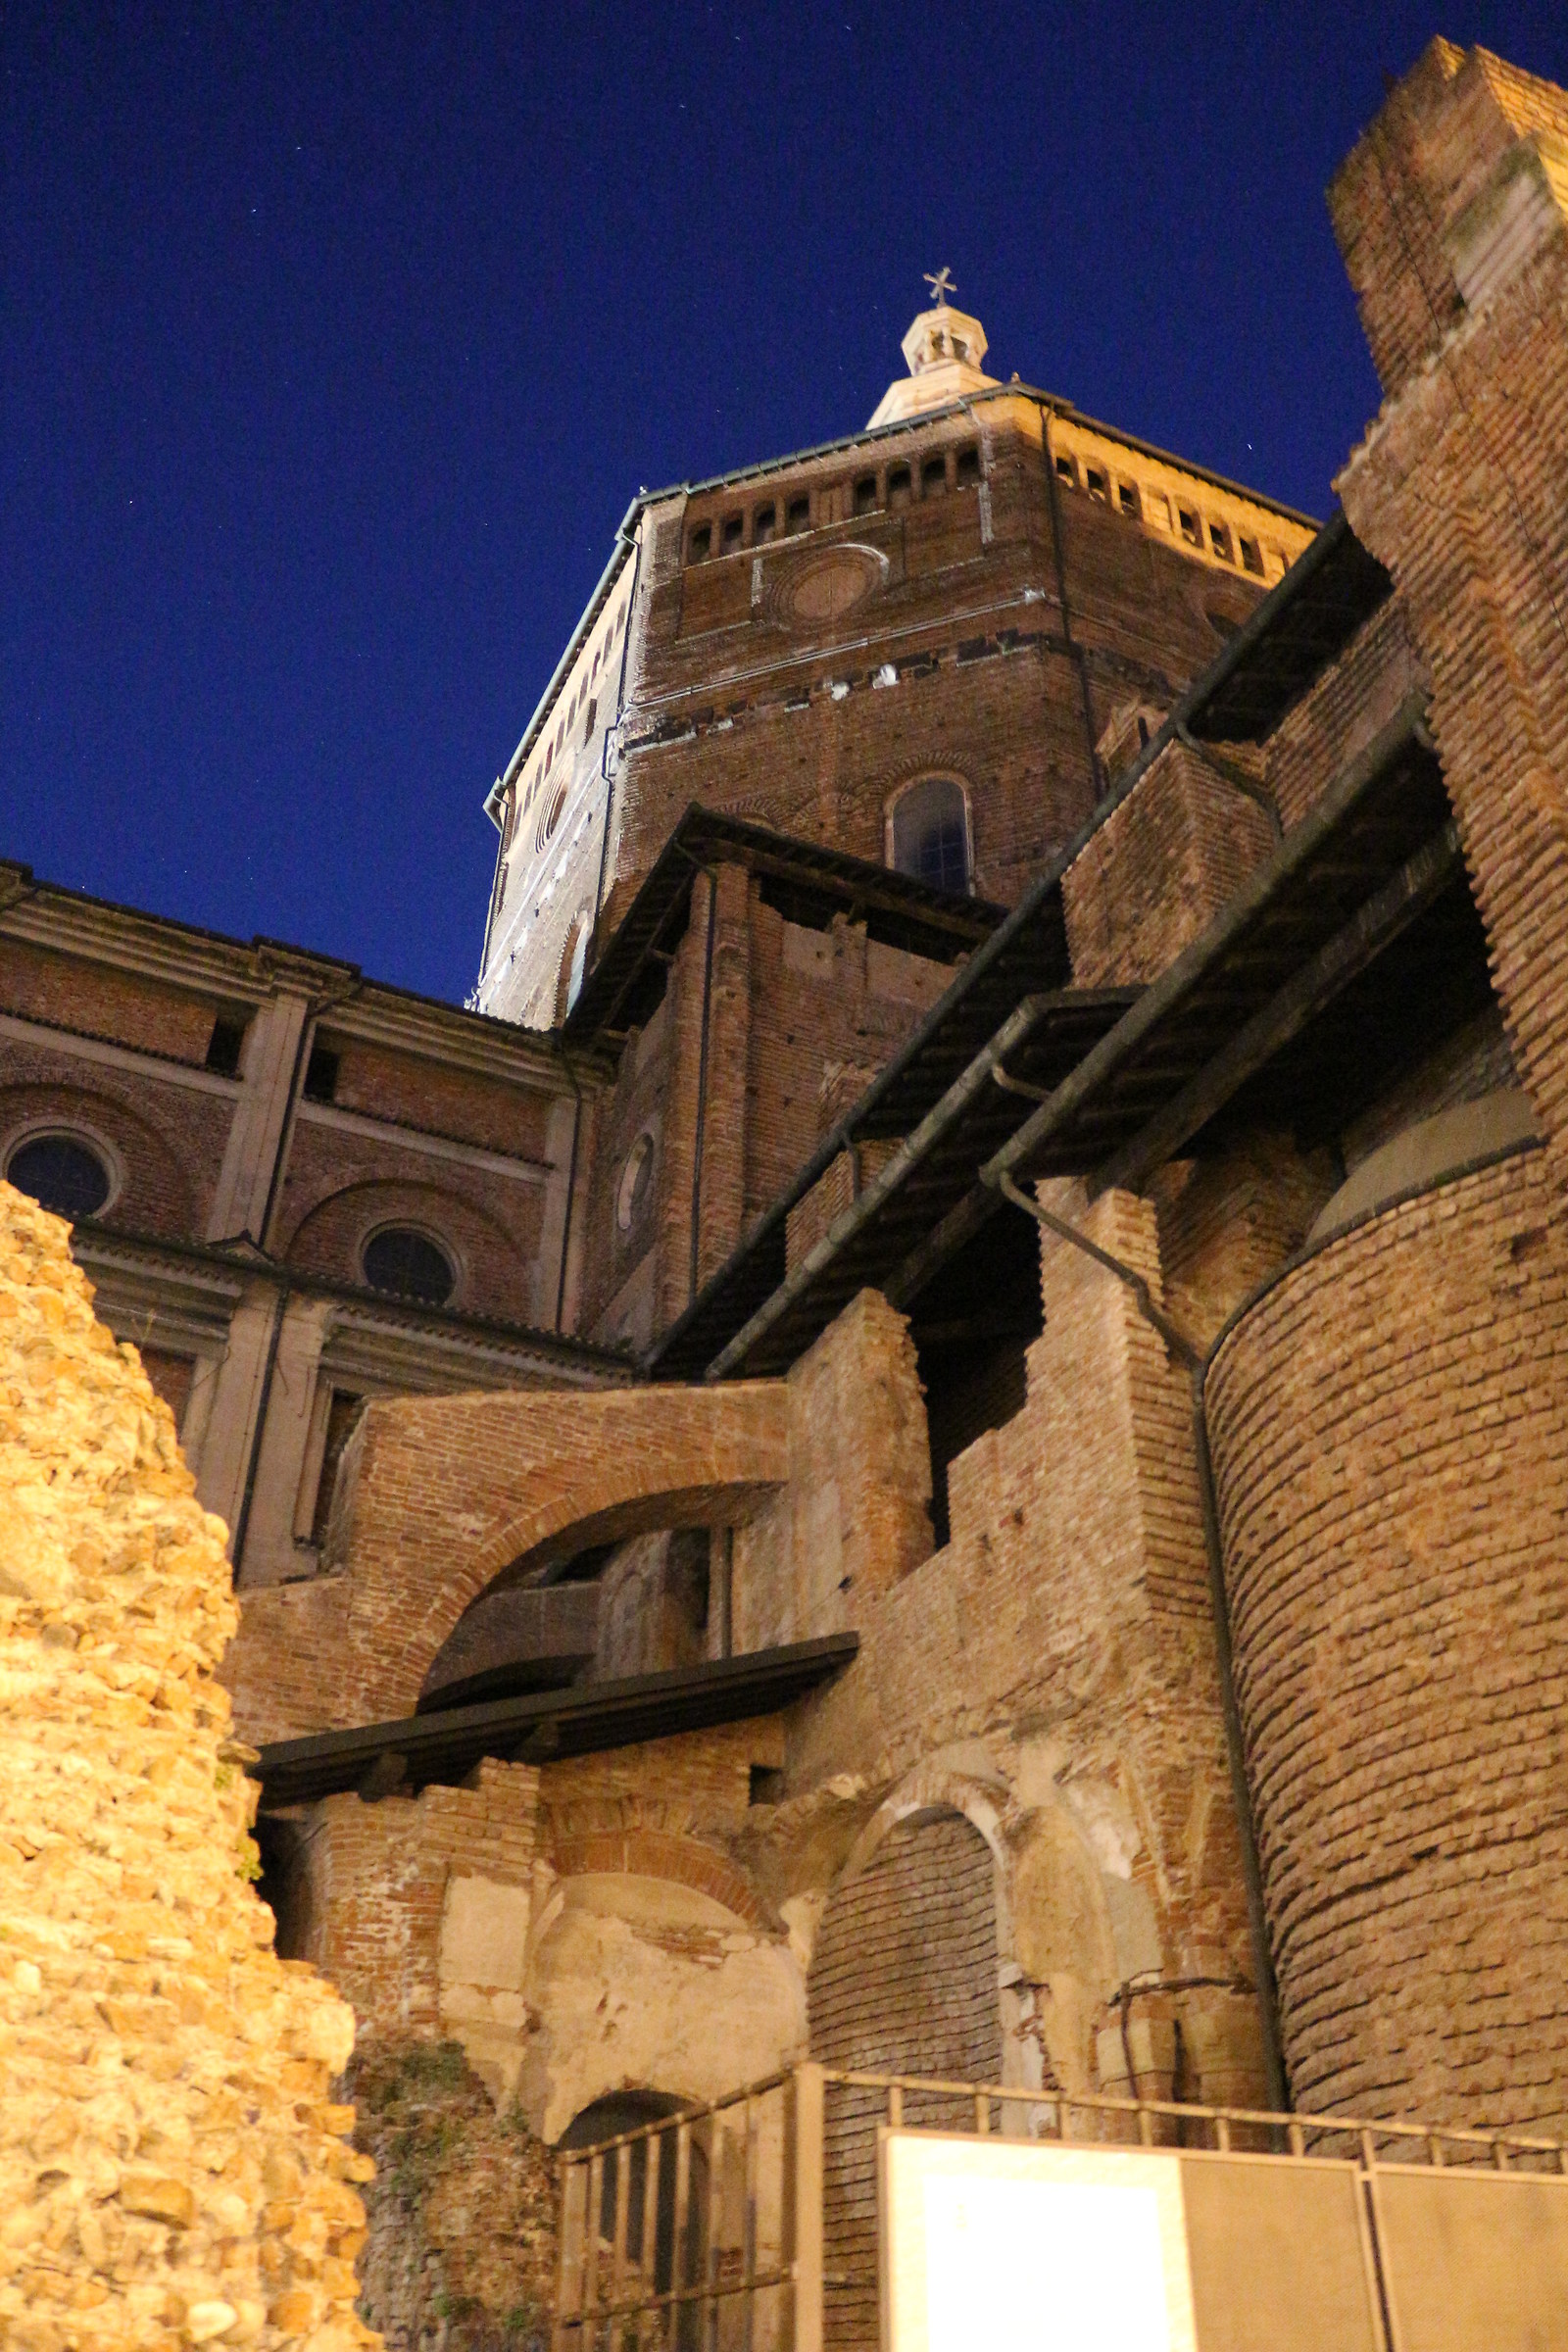 The Duomo...